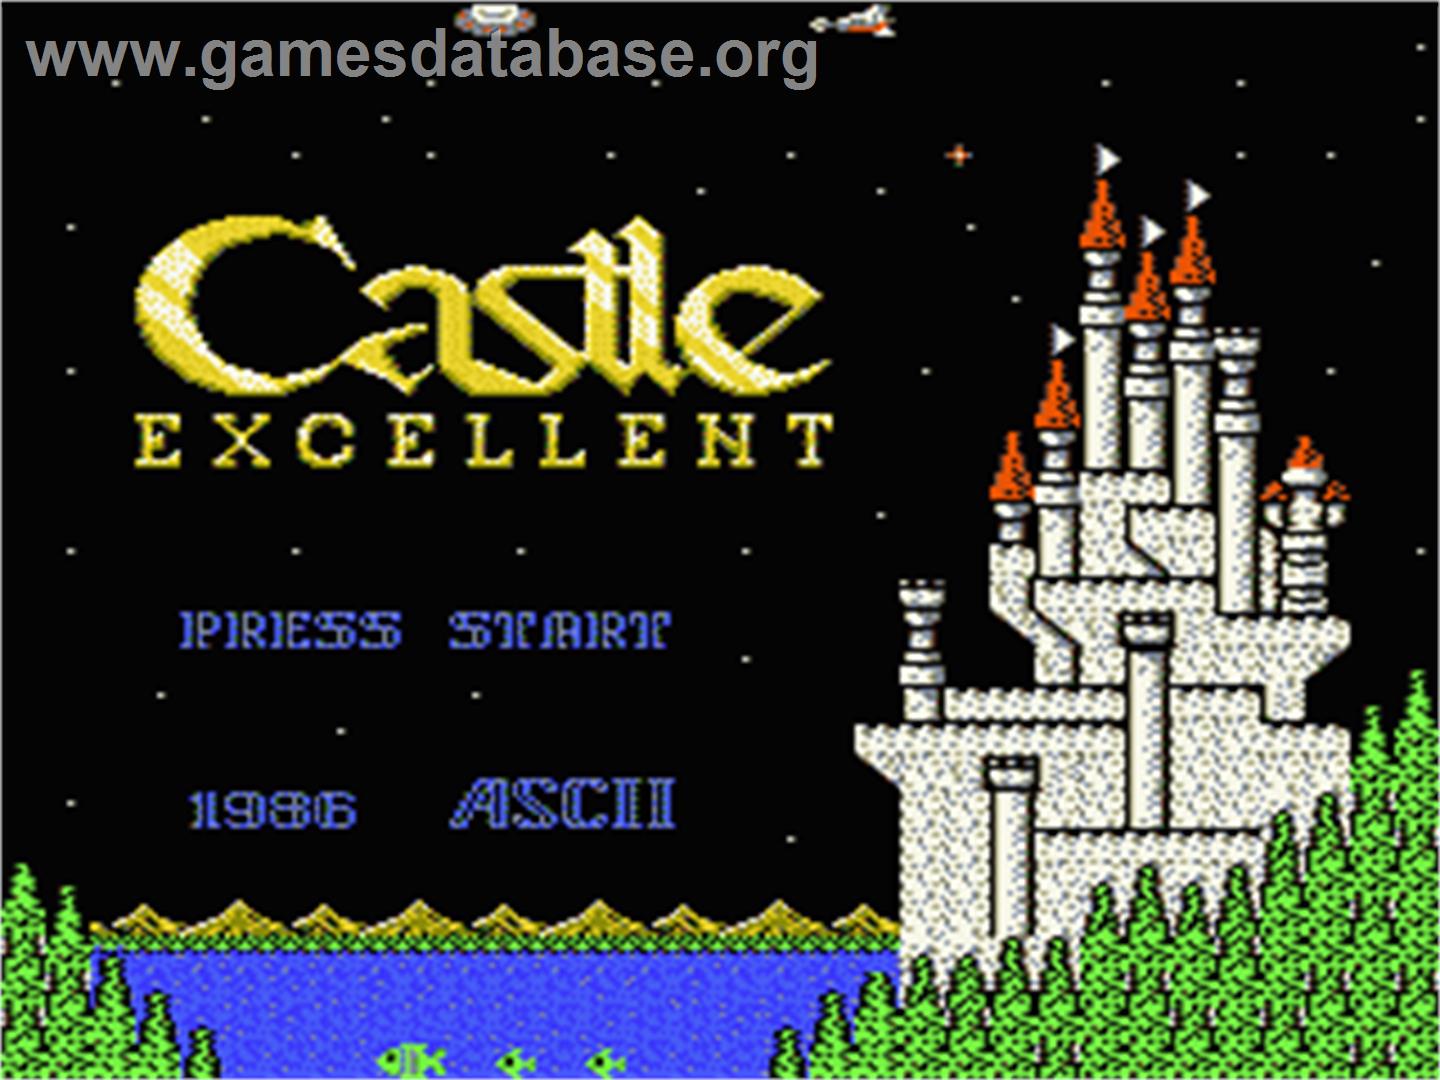 Castle Excellent - Nintendo NES - Artwork - Title Screen